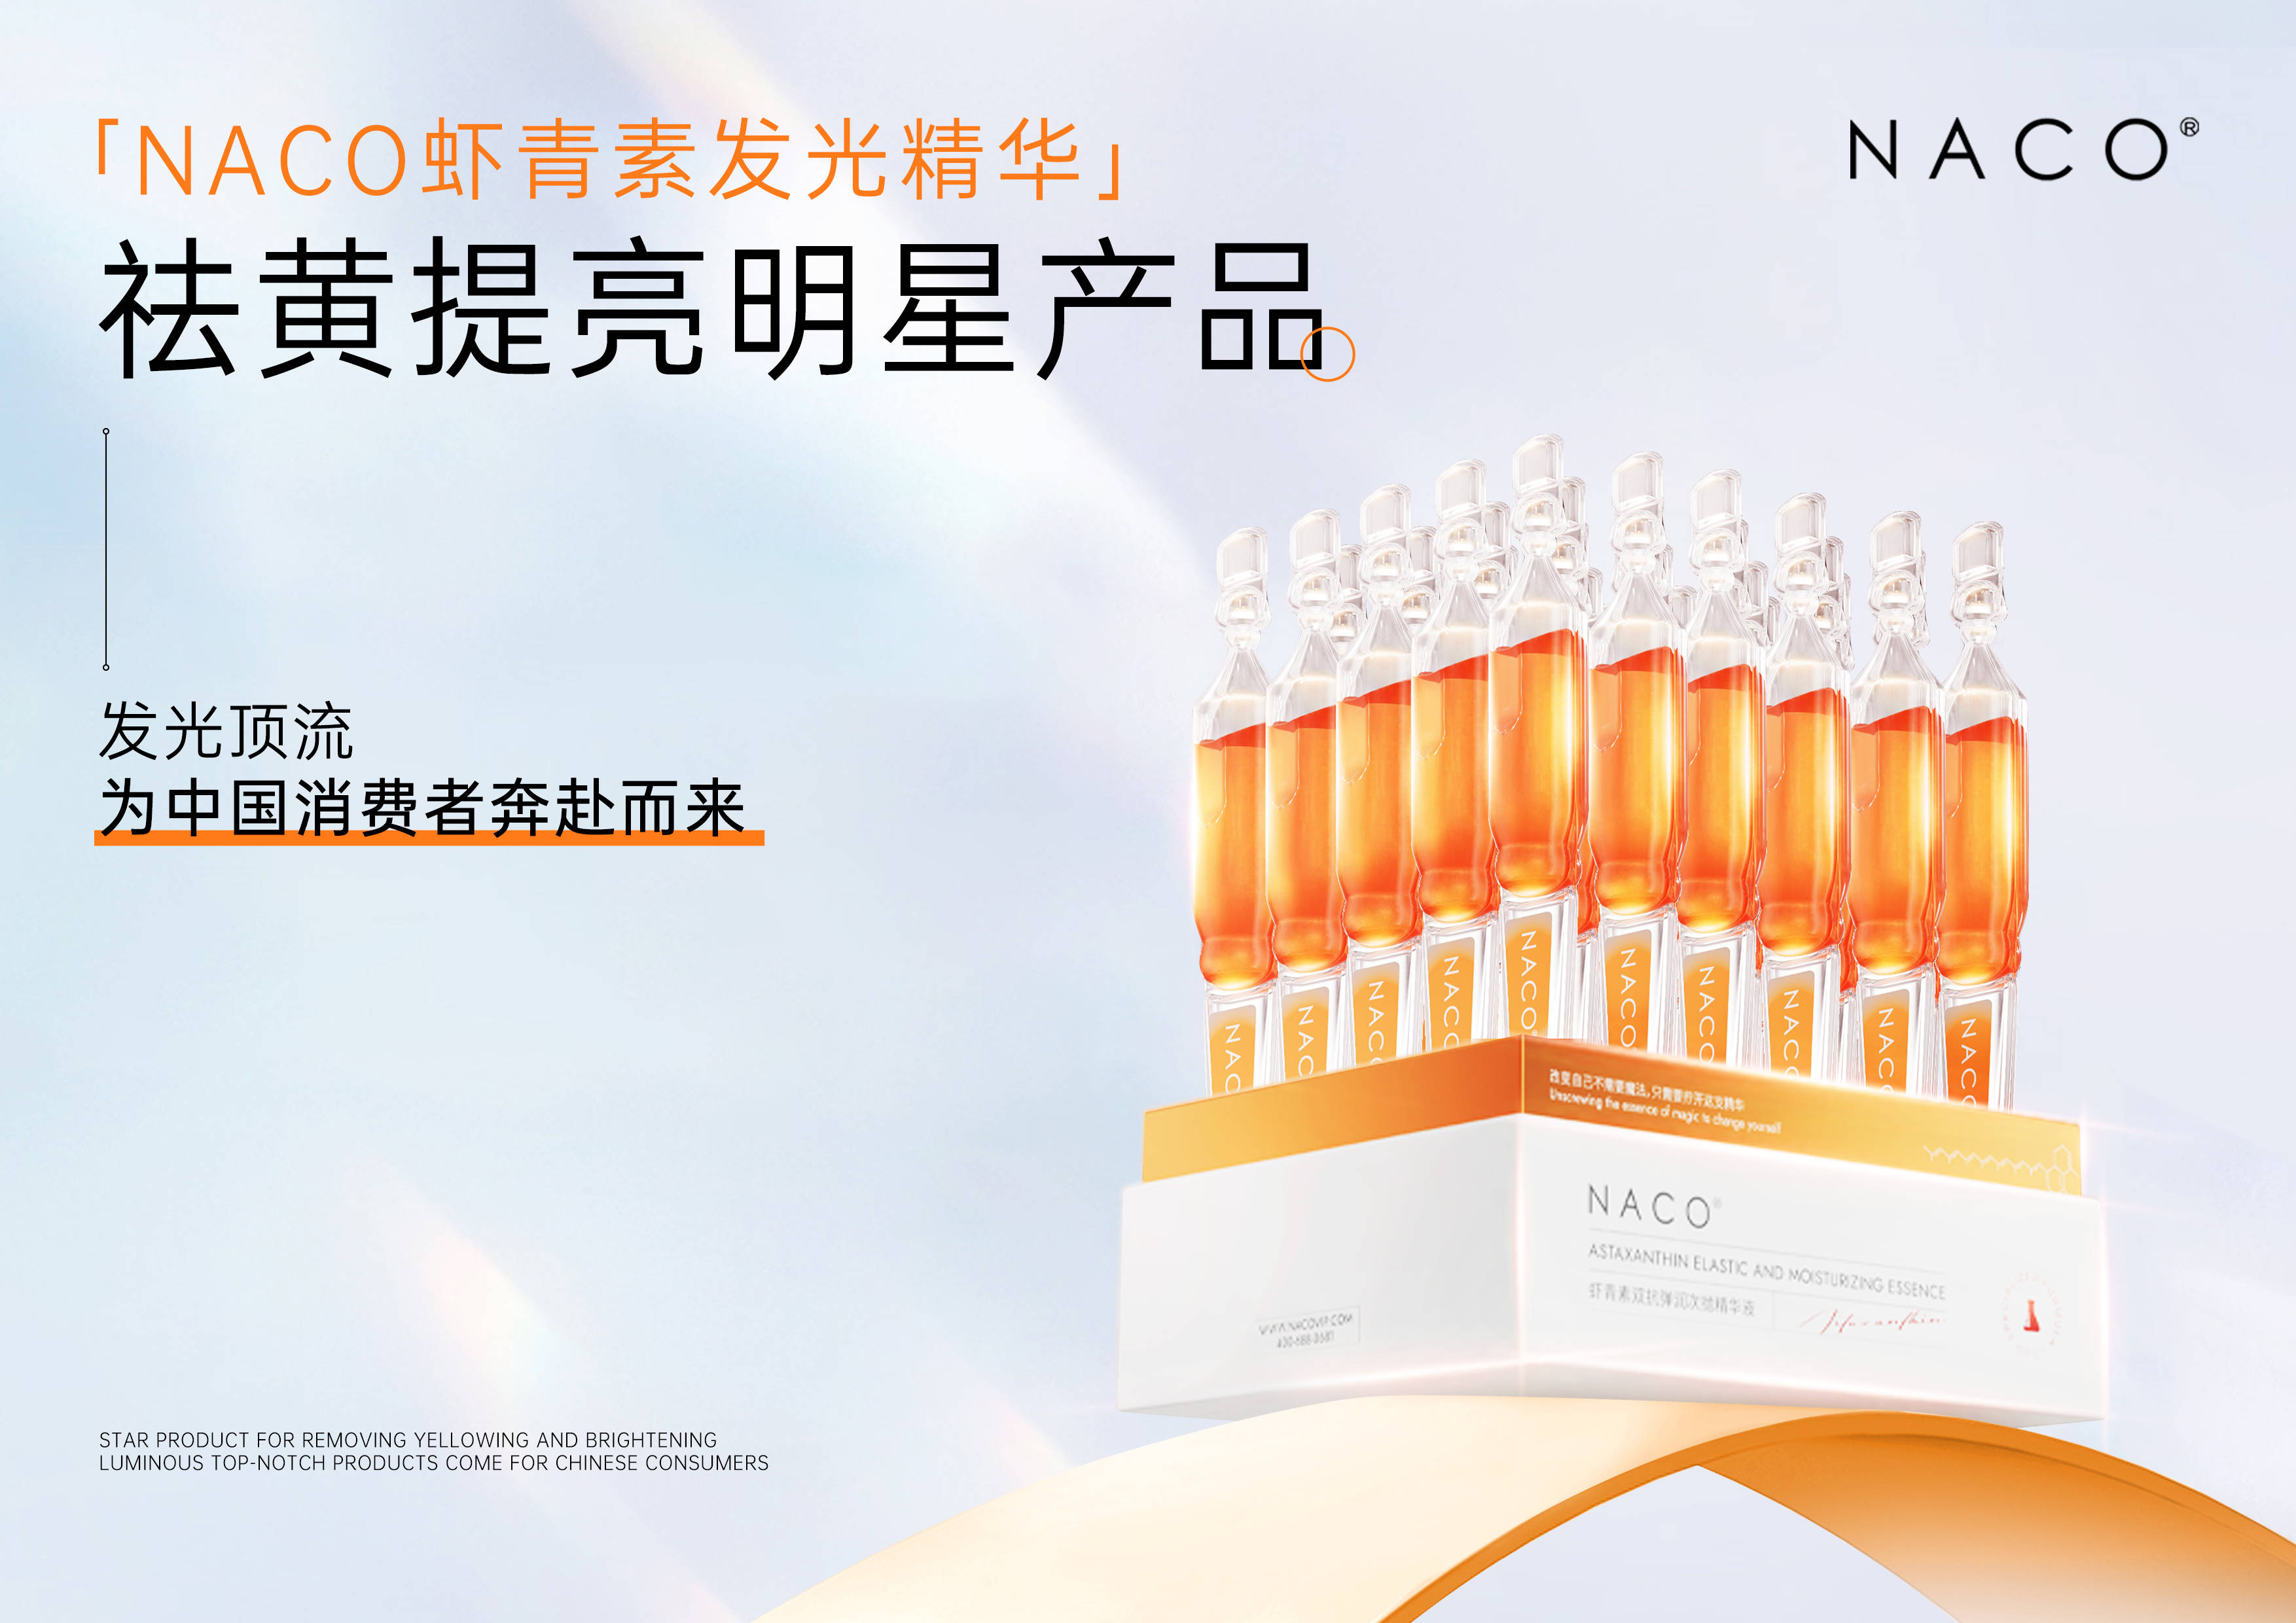 NACO 不断拓展精华护肤品类，实现多元化功效护肤 